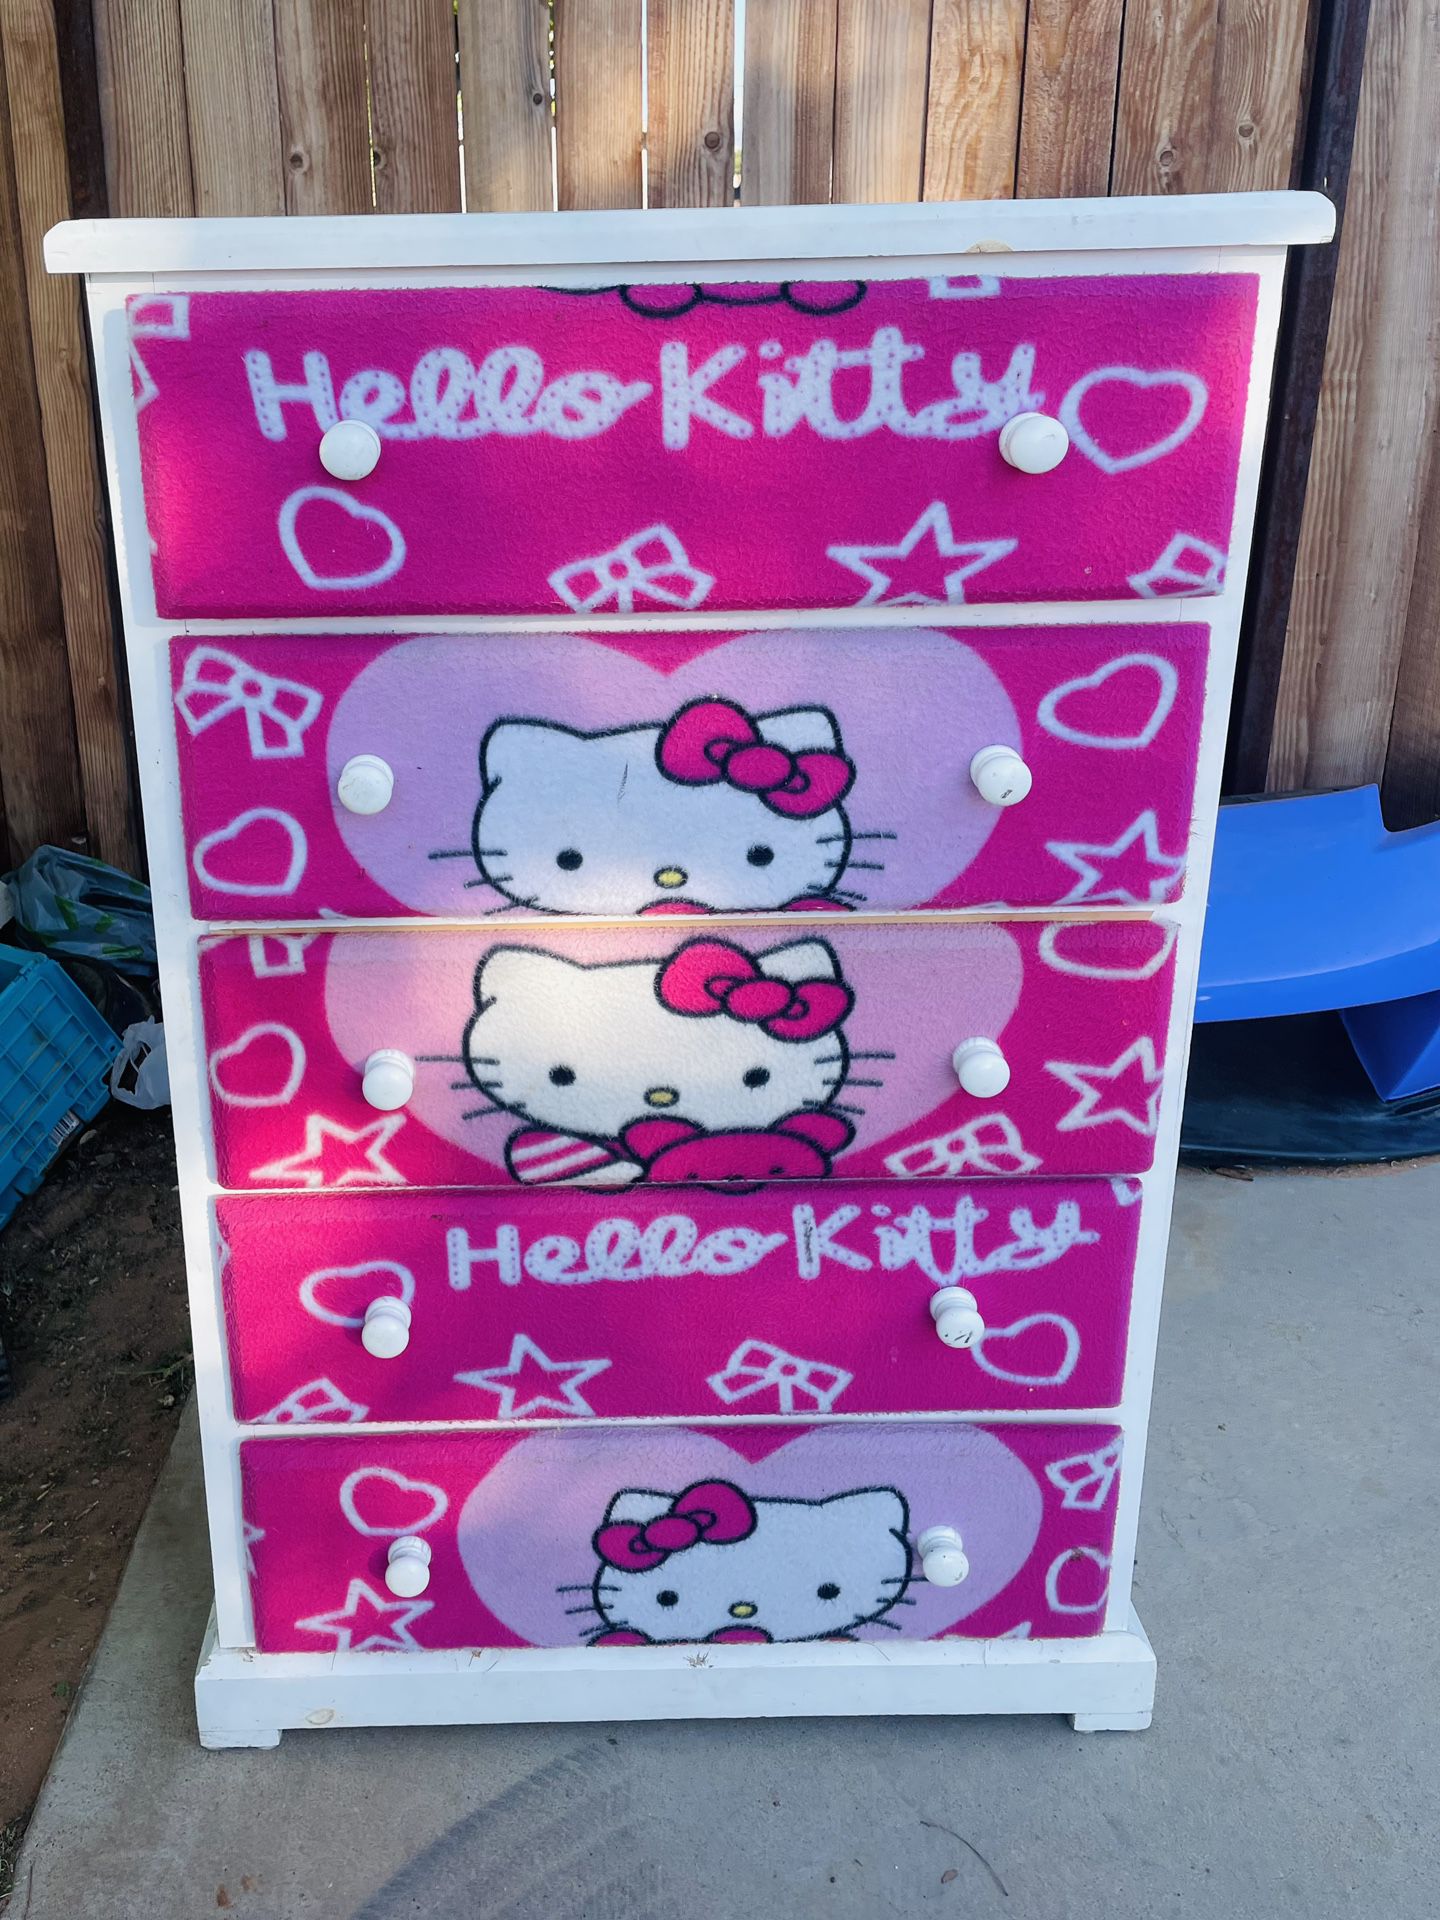 Hello Kitty Dresser 